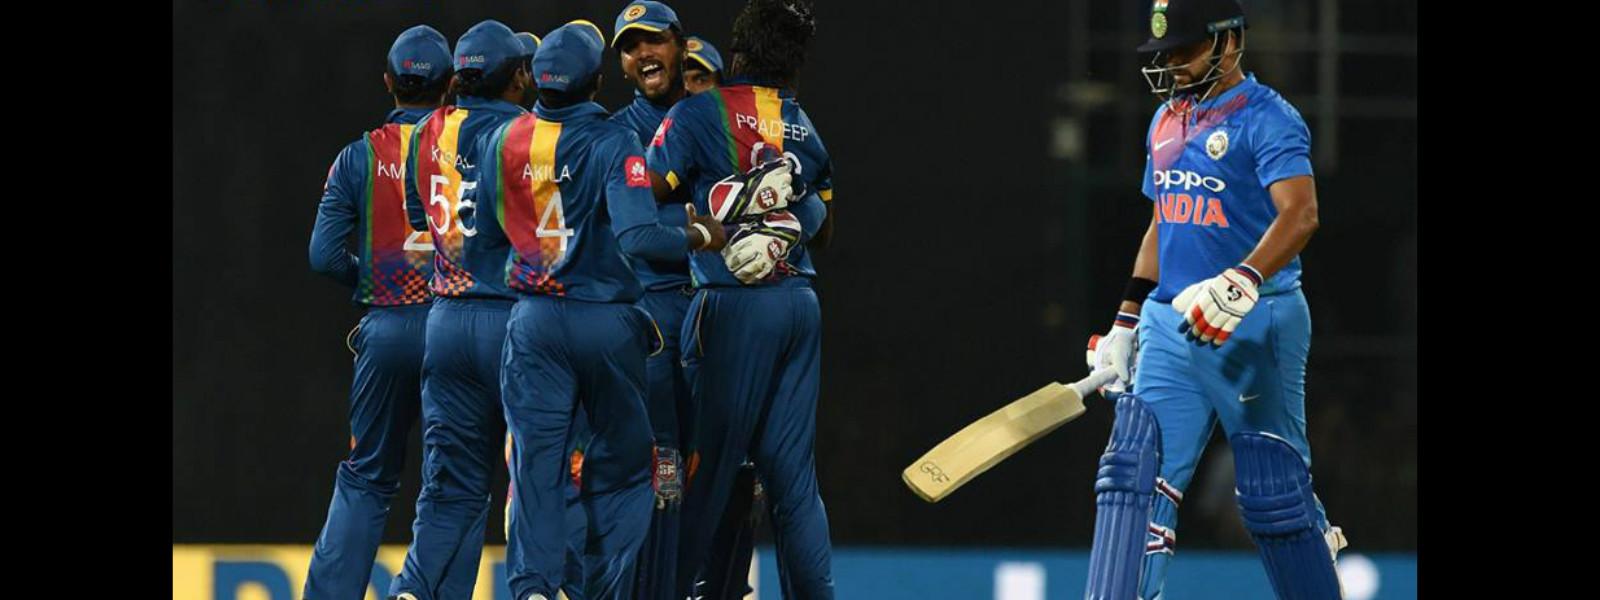 Sri Lanka beat India by 5 wickets